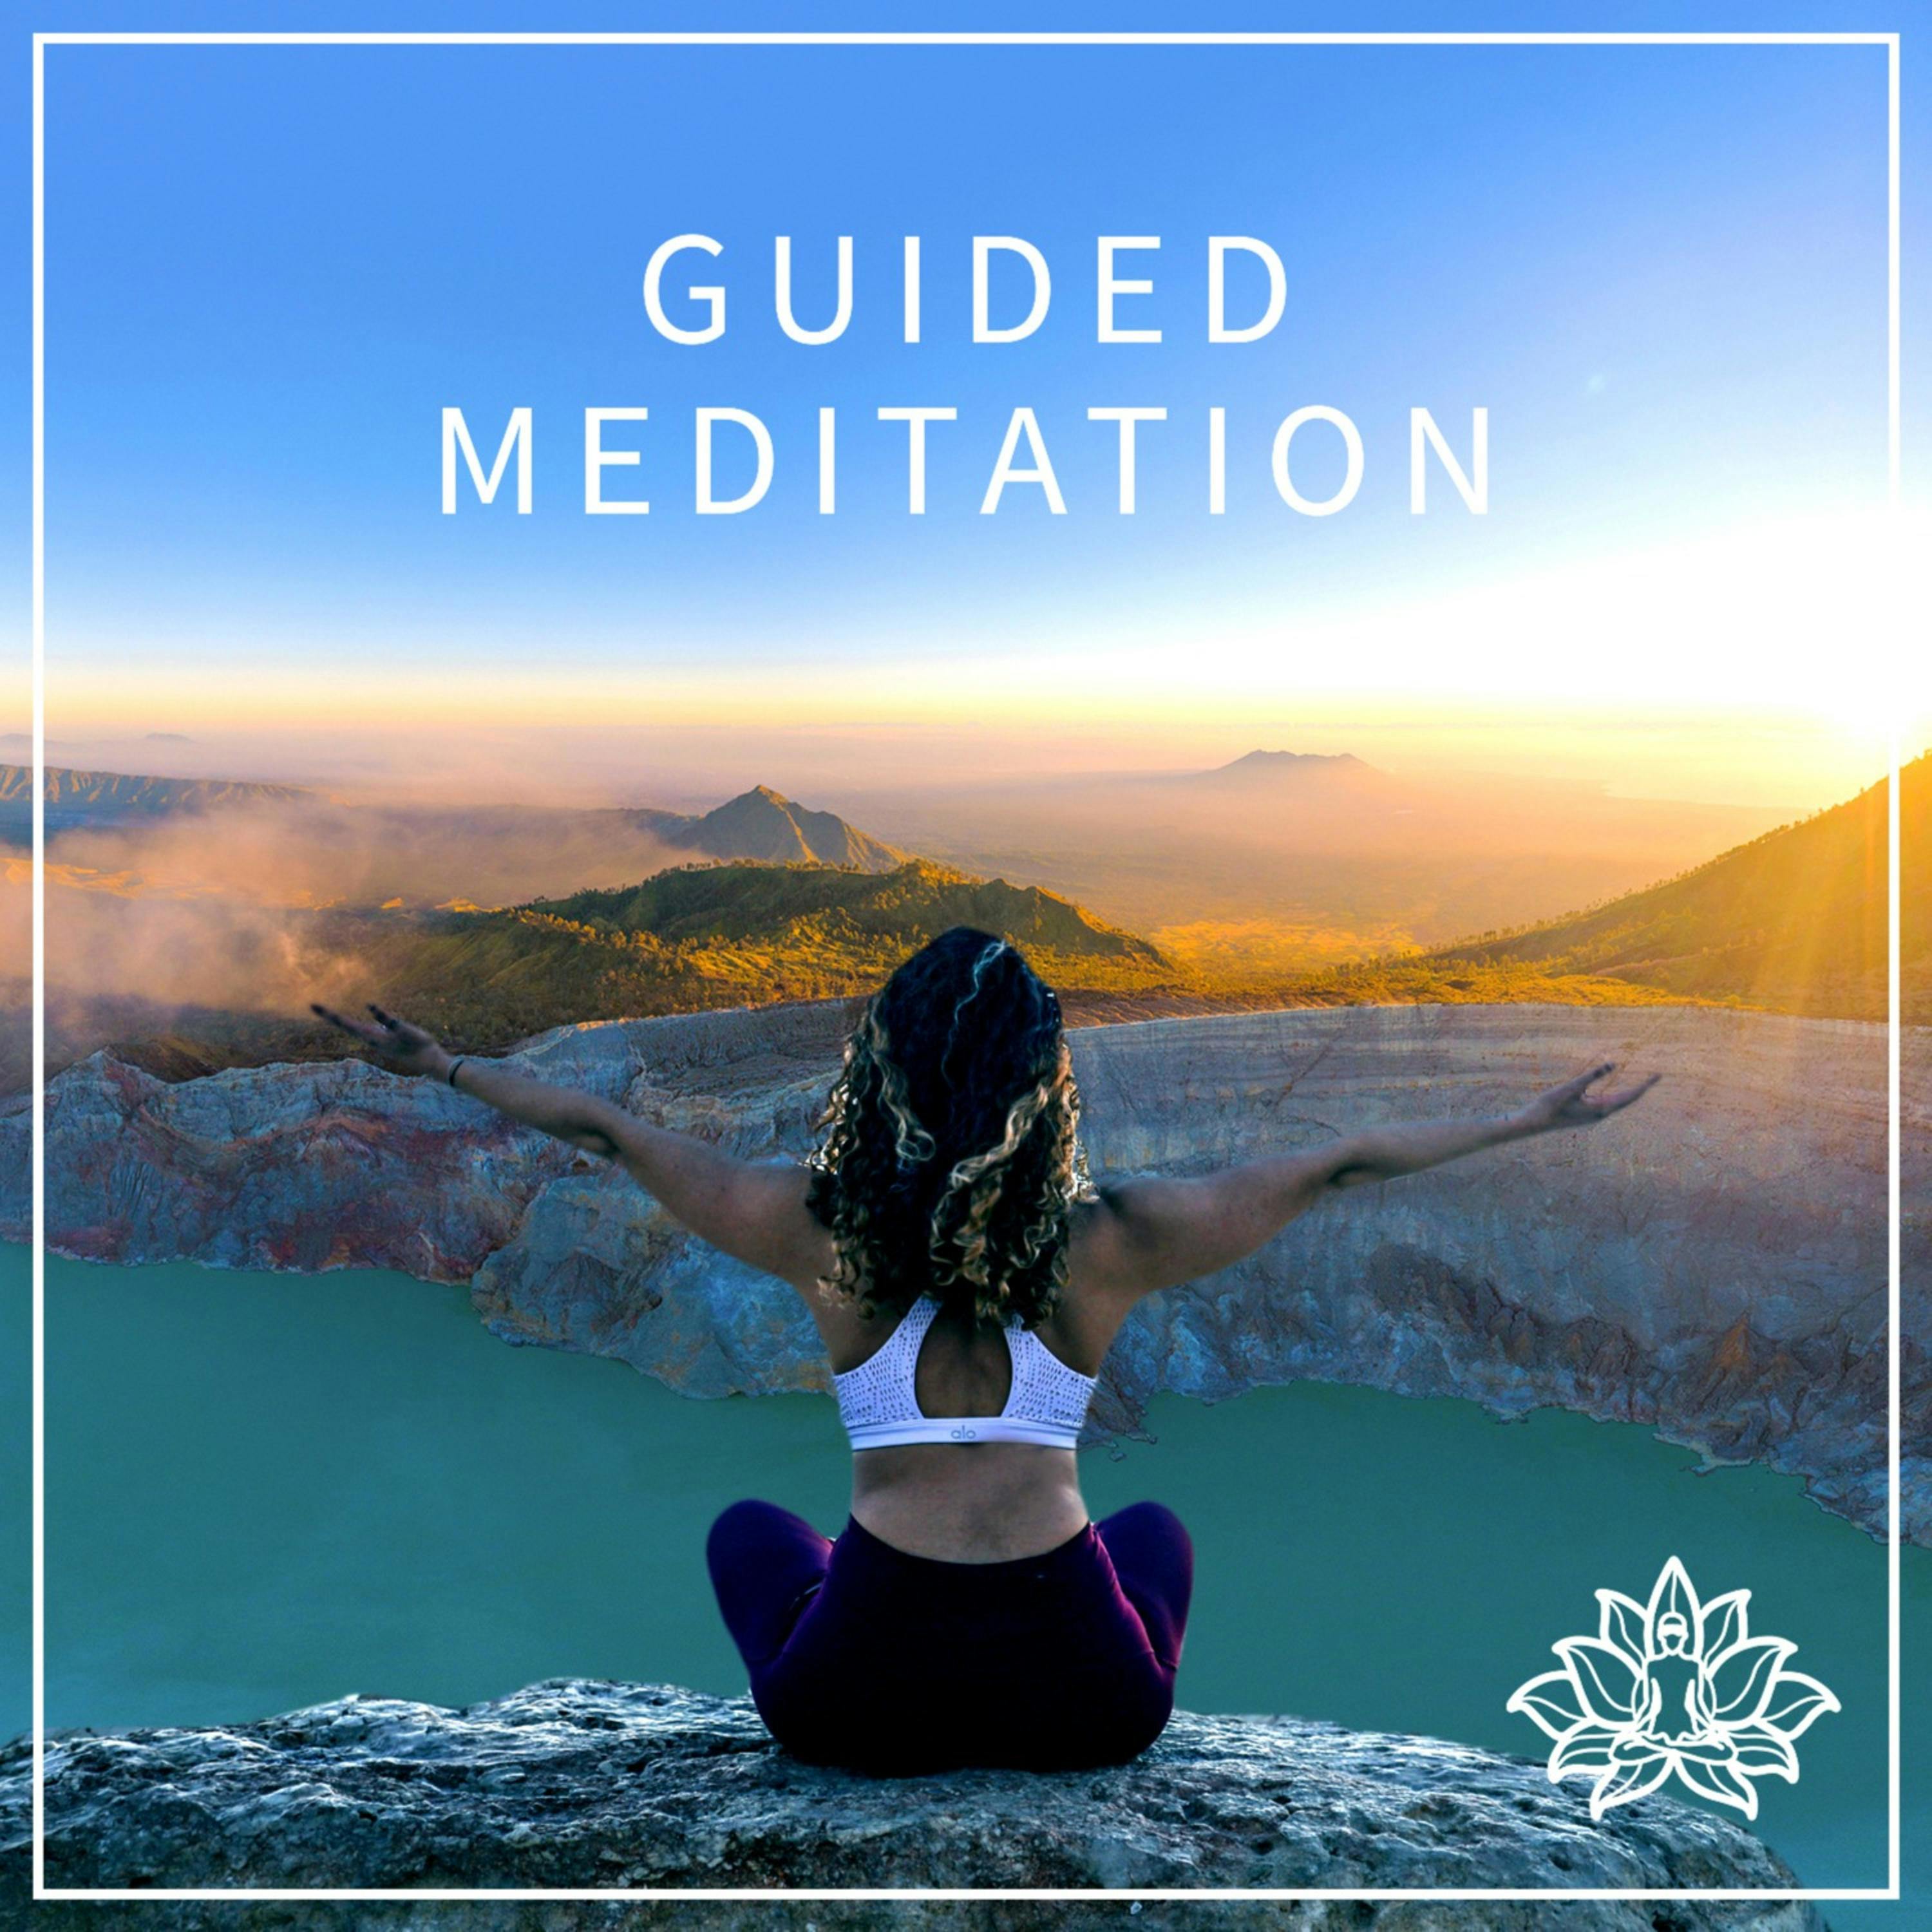 Release and Surrender Meditation 😌🤲